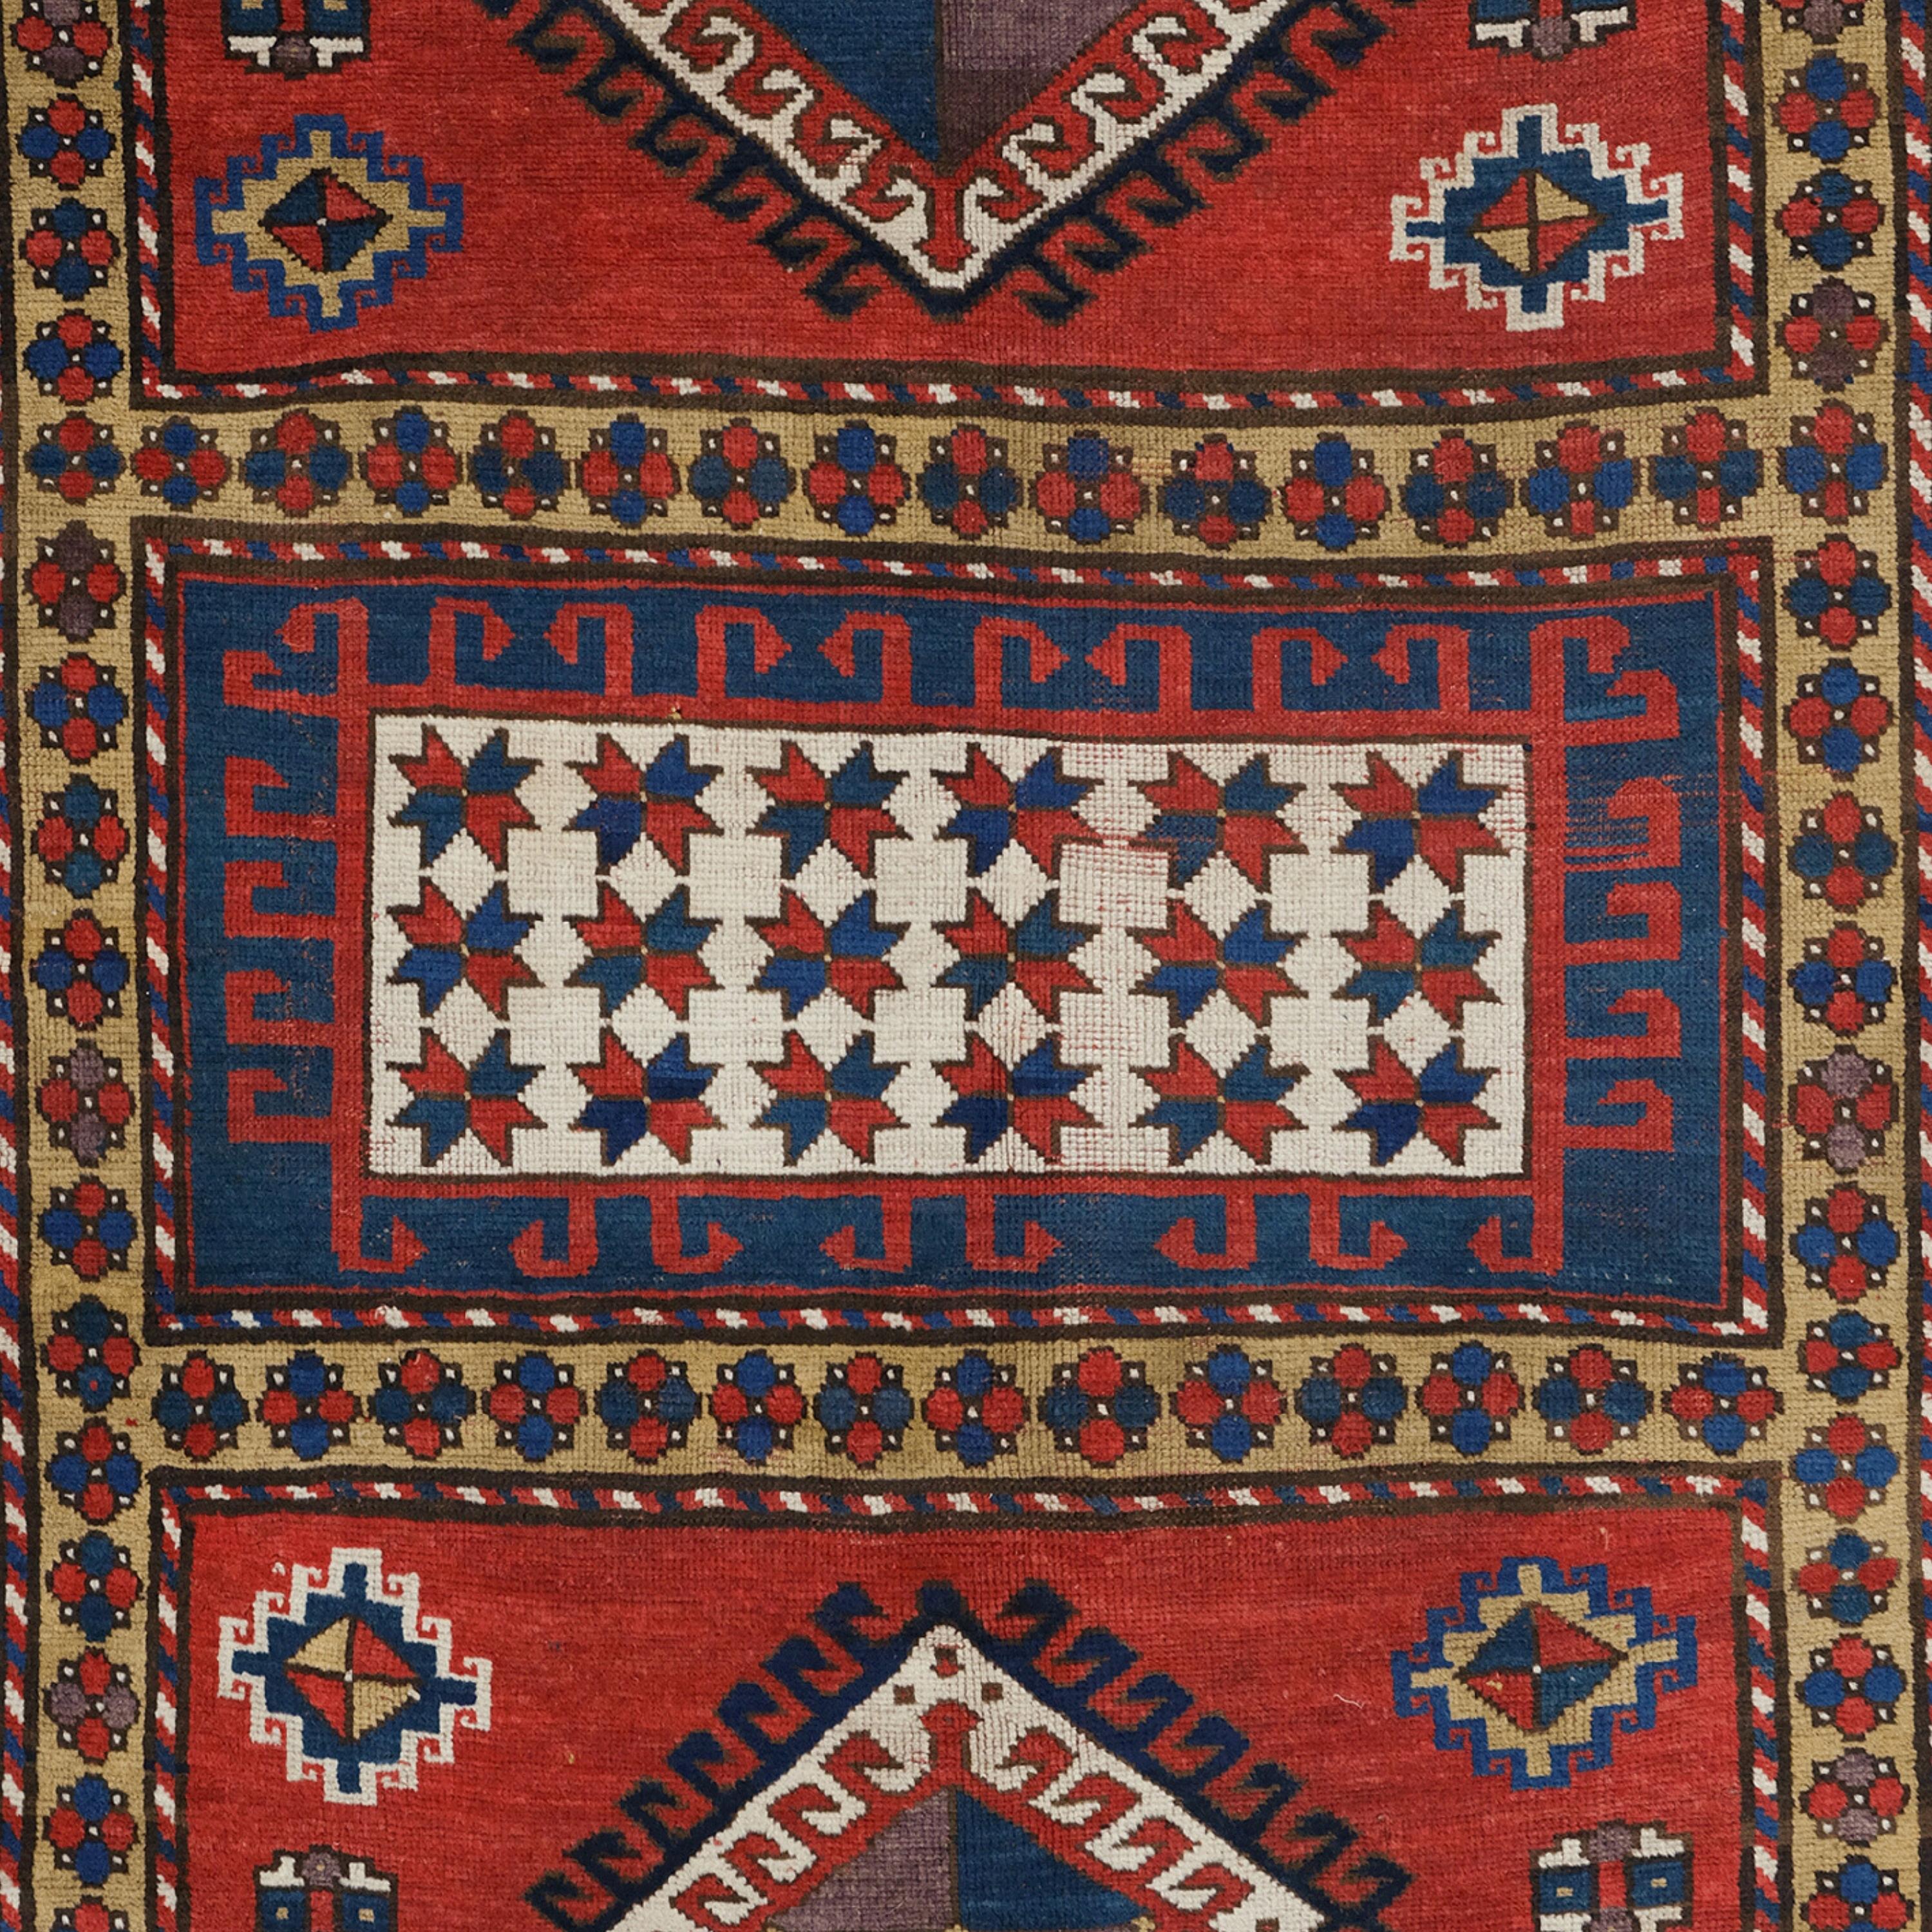 Antique Bordjalou Rug - Mid-19th Century Caucasian Bordjalou Rug, Antique Rug In Good Condition For Sale In Sultanahmet, 34